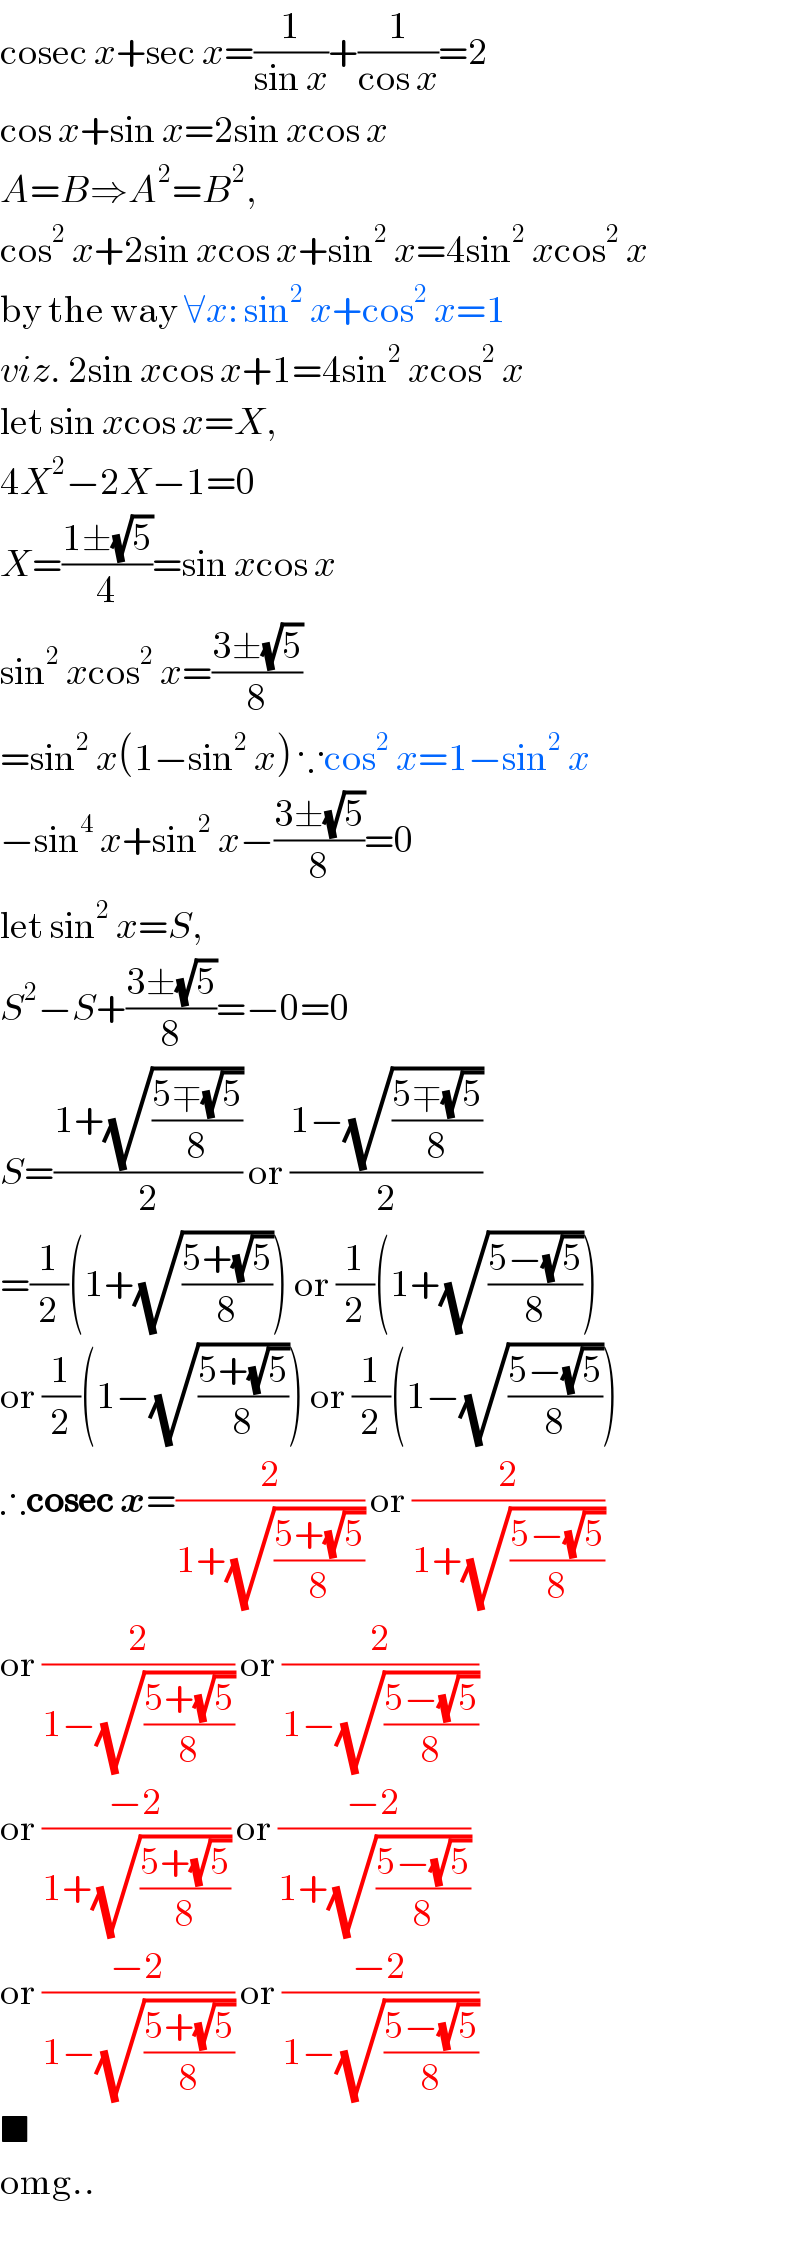 cosec x+sec x=(1/(sin x))+(1/(cos x))=2  cos x+sin x=2sin xcos x  A=B⇒A^2 =B^2 ,  cos^2  x+2sin xcos x+sin^2  x=4sin^2  xcos^2  x  by the way ∀x: sin^2  x+cos^2  x=1  viz. 2sin xcos x+1=4sin^2  xcos^2  x  let sin xcos x=X,  4X^2 −2X−1=0  X=((1±(√5))/4)=sin xcos x  sin^2  xcos^2  x=((3±(√5))/8)  =sin^2  x(1−sin^2  x) ∵cos^2  x=1−sin^2  x  −sin^4  x+sin^2  x−((3±(√5))/8)=0  let sin^2  x=S,  S^2 −S+((3±(√5))/8)=−0=0  S=((1+(√((5∓(√5))/8)))/2) or ((1−(√((5∓(√5))/8)))/2)  =(1/2)(1+(√((5+(√5))/8))) or (1/2)(1+(√((5−(√5))/8)))  or (1/2)(1−(√((5+(√5))/8))) or (1/2)(1−(√((5−(√5))/8)))  ∴cosec x=(2/(1+(√((5+(√5))/8)))) or (2/(1+(√((5−(√5))/8))))  or (2/(1−(√((5+(√5))/8)))) or (2/(1−(√((5−(√5))/8))))  or ((−2)/(1+(√((5+(√5))/8)))) or ((−2)/(1+(√((5−(√5))/8))))  or ((−2)/(1−(√((5+(√5))/8)))) or ((−2)/(1−(√((5−(√5))/8))))  ■  omg..  